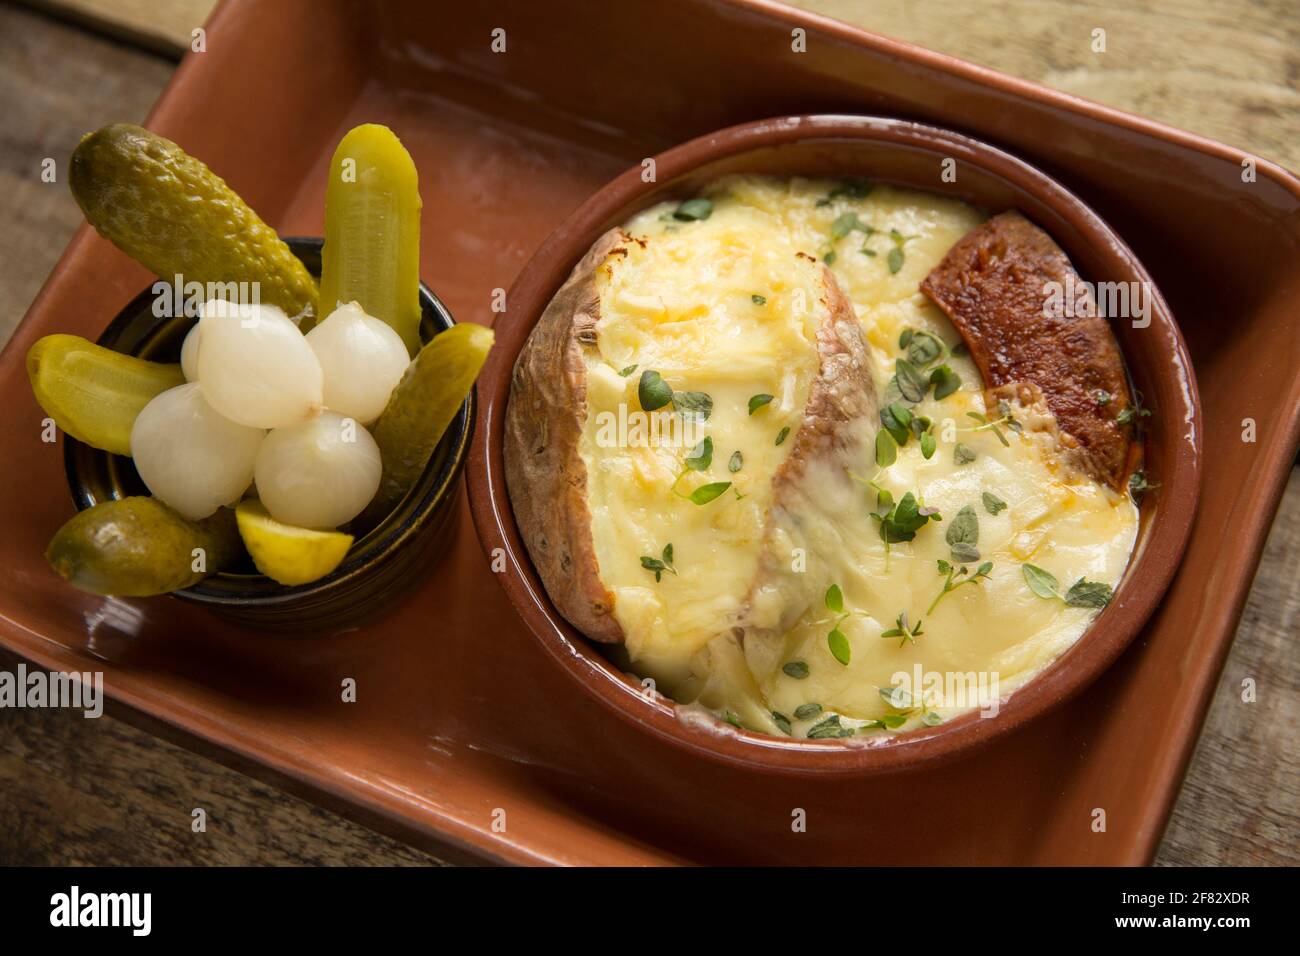 Un piatto fatto in casa di Raclette fuso, una patata al forno e salsiccia di chorizo alla griglia servita con cetriolini e cipolle sottaceto. Raclette ha avuto origine in Foto Stock